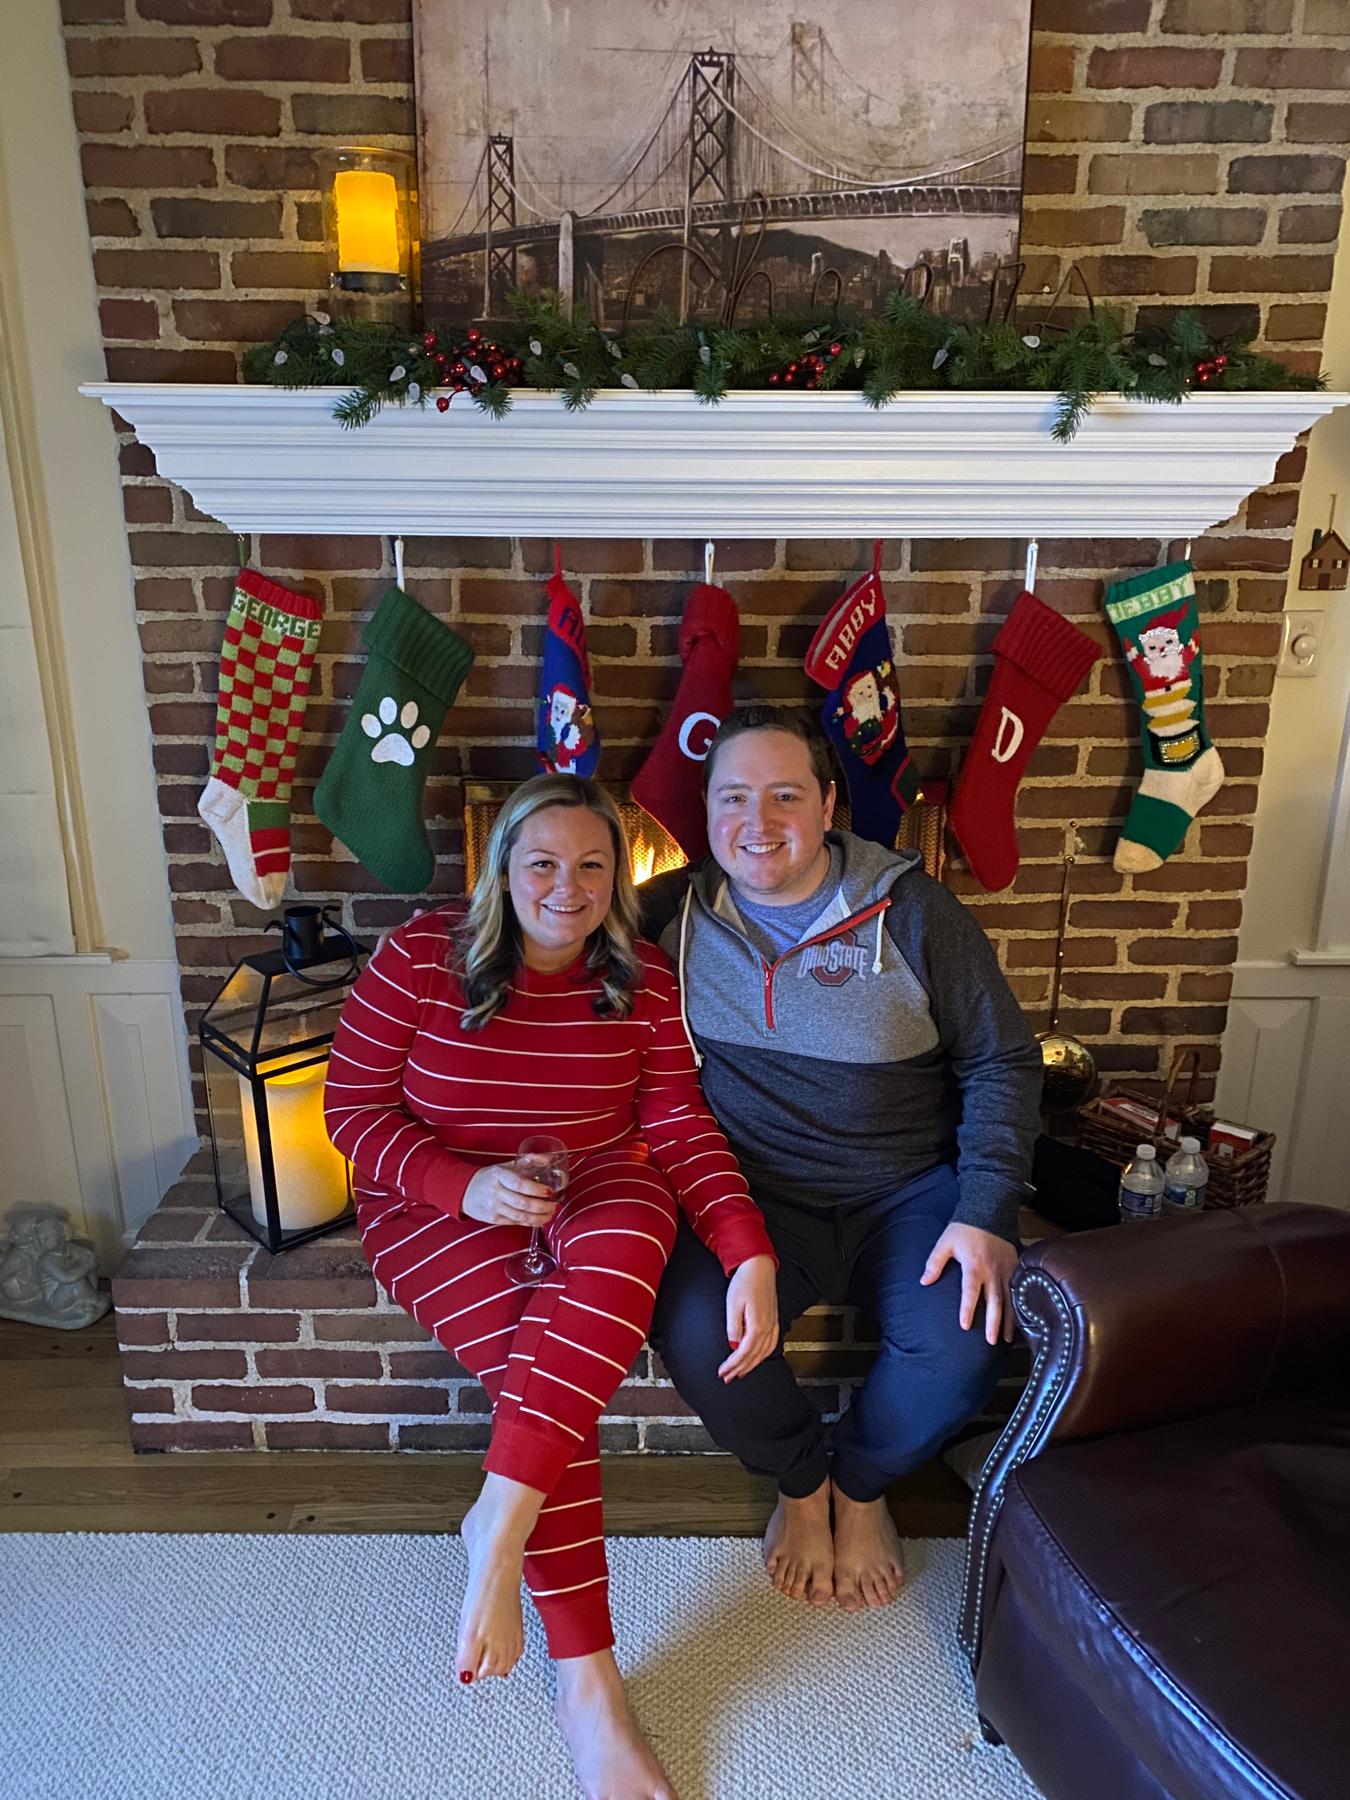 Dan visits Abby's family for Christmas - December 2021.